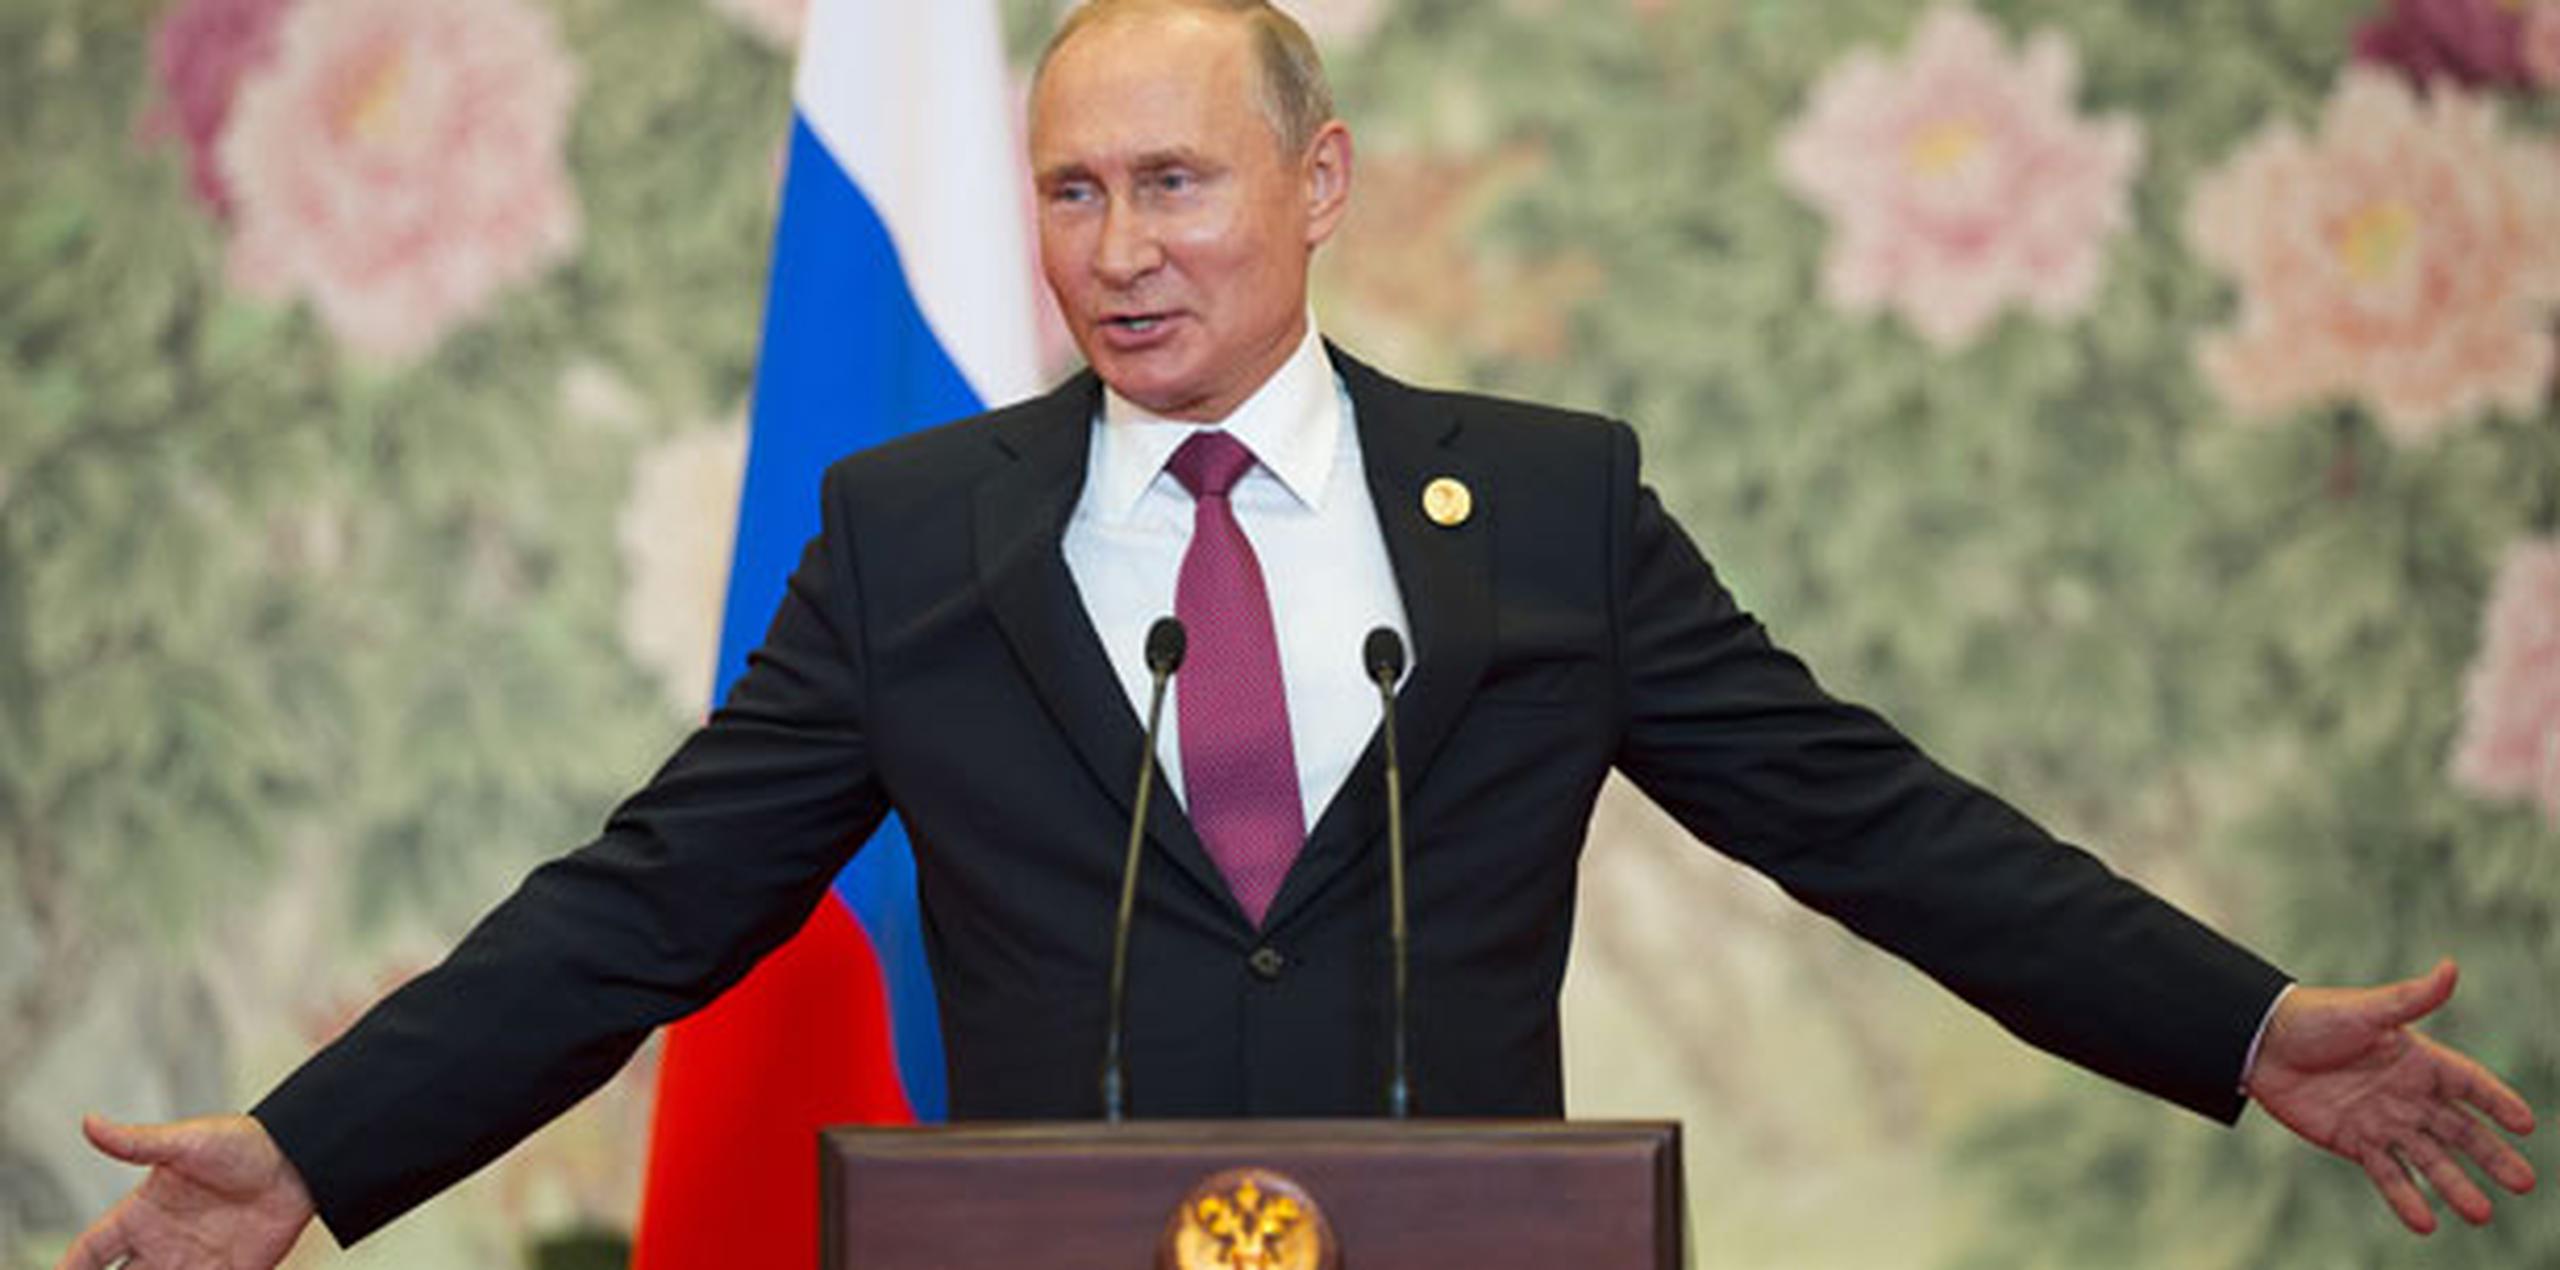 Putin también acogió la declaración de Trump sobre que Rusia debería ser invitada a reincorporarse al grupo que alguna vez fue llamado G8, antes de que el resto de los miembros expulsaran a Rusia. (AP)